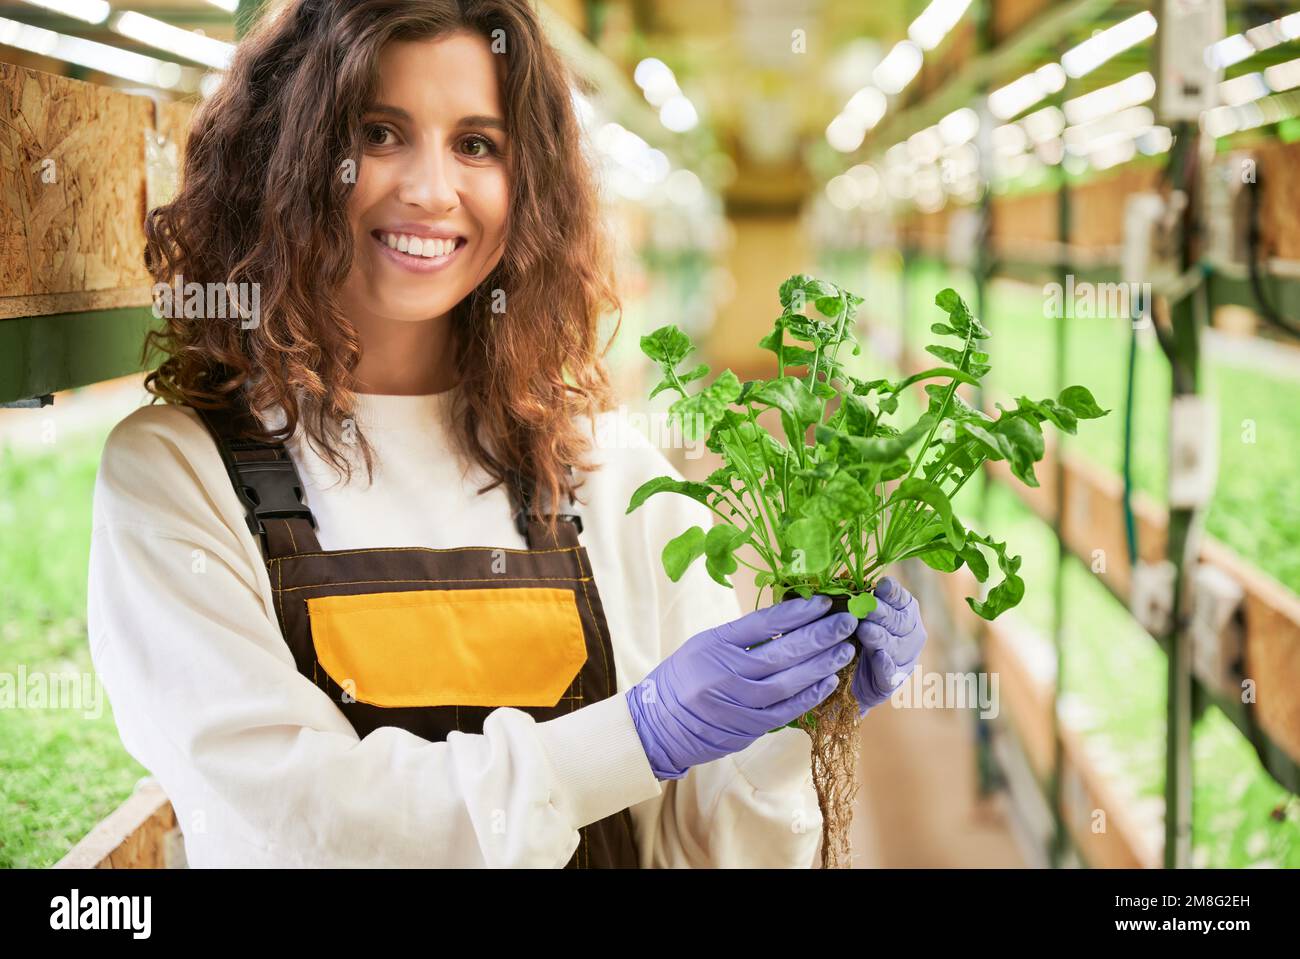 Porträt einer Gärtnerin mit grünem Rucolablätter. Junge Frau in Gartenhandschuhen steht im Gang zwischen Regalen mit Pflanzen im Gewächshaus, schaut in die Kamera und lächelt. Stockfoto